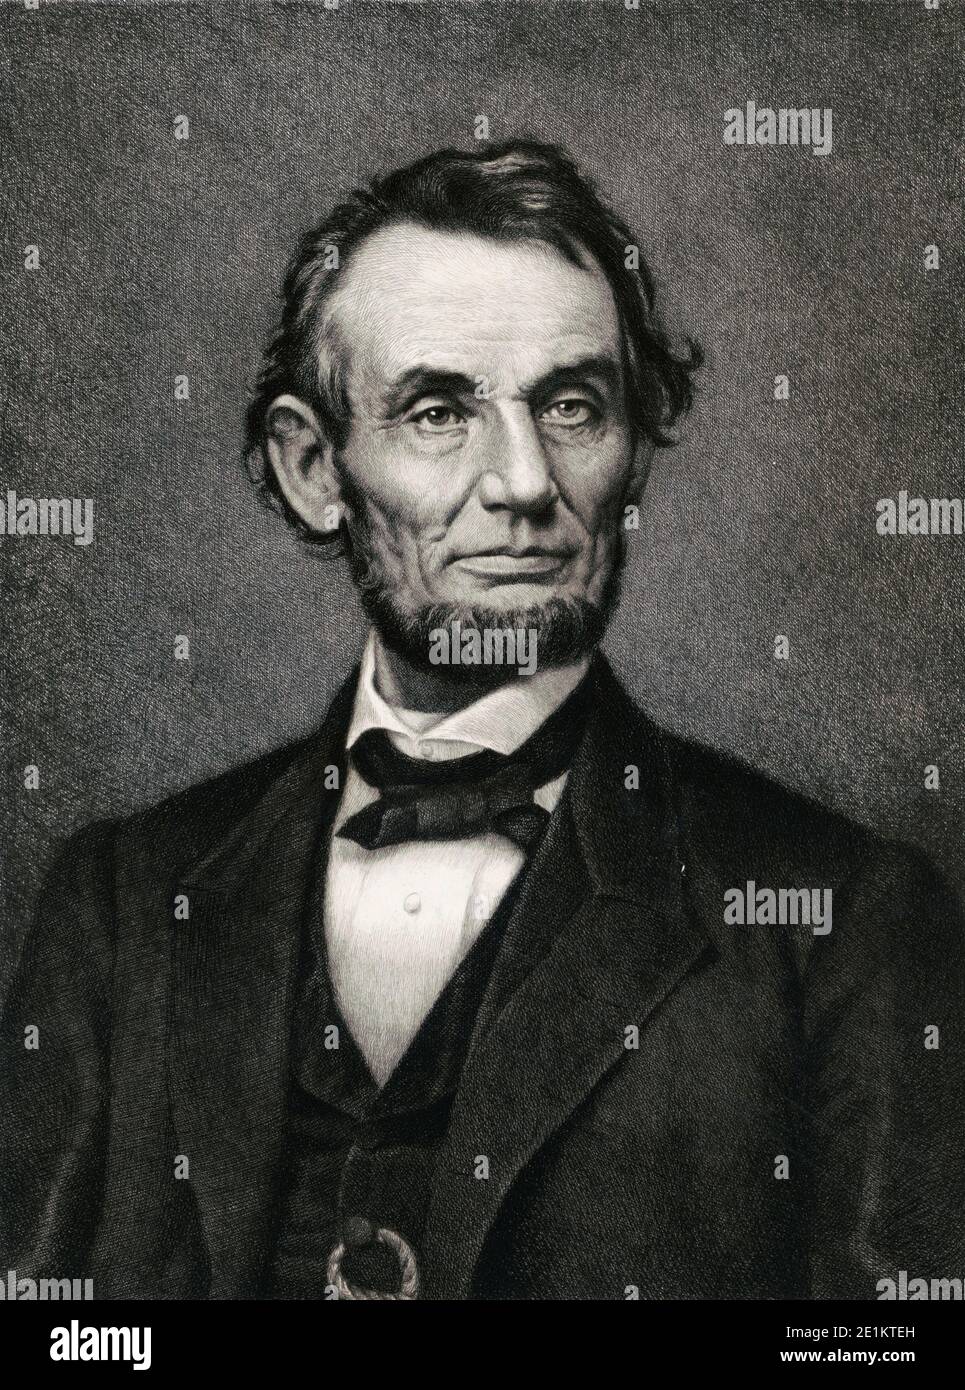 Gravure du président Abraham Lincoln. Abraham Lincoln (1809 – 1865) était un homme d'État et un avocat américain qui a servi comme 16e président de l'Uni Banque D'Images